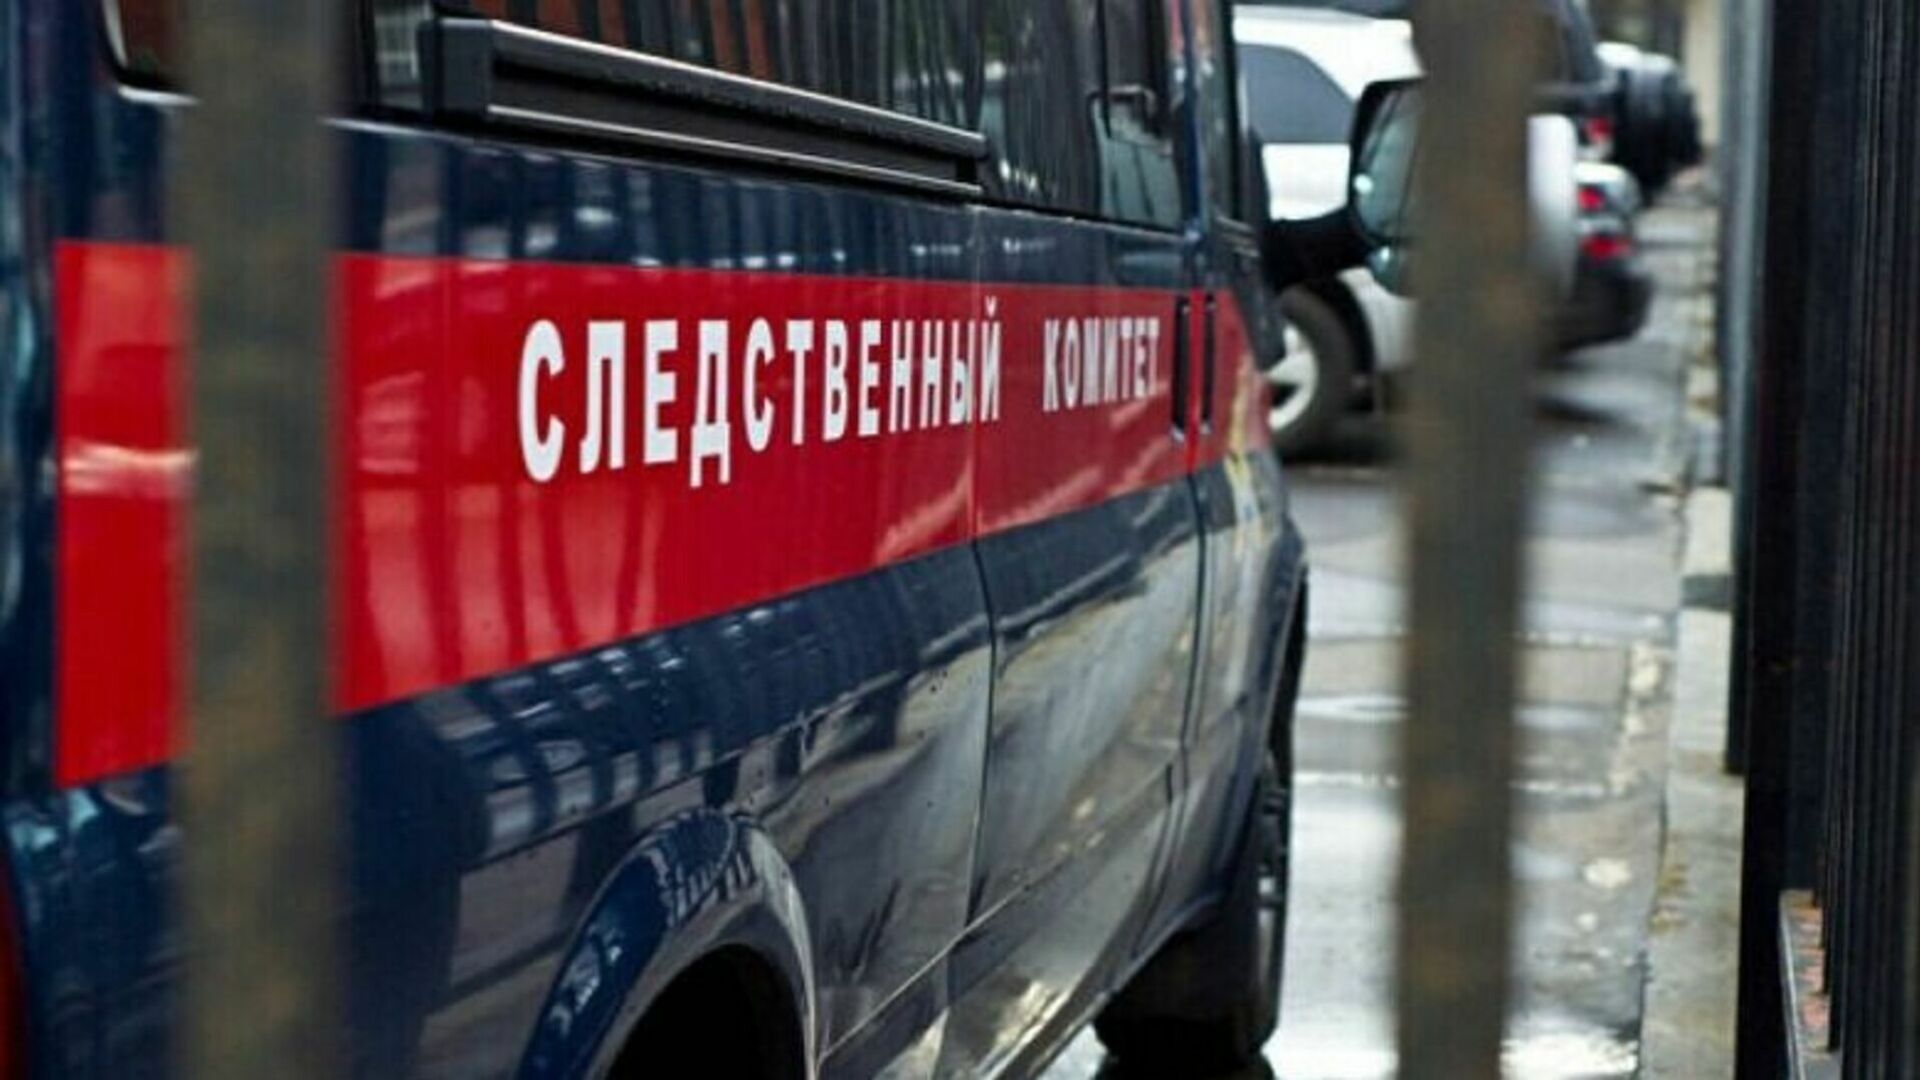 Огонь, вода и мошенничество - что случилось в Волгограде в четверг